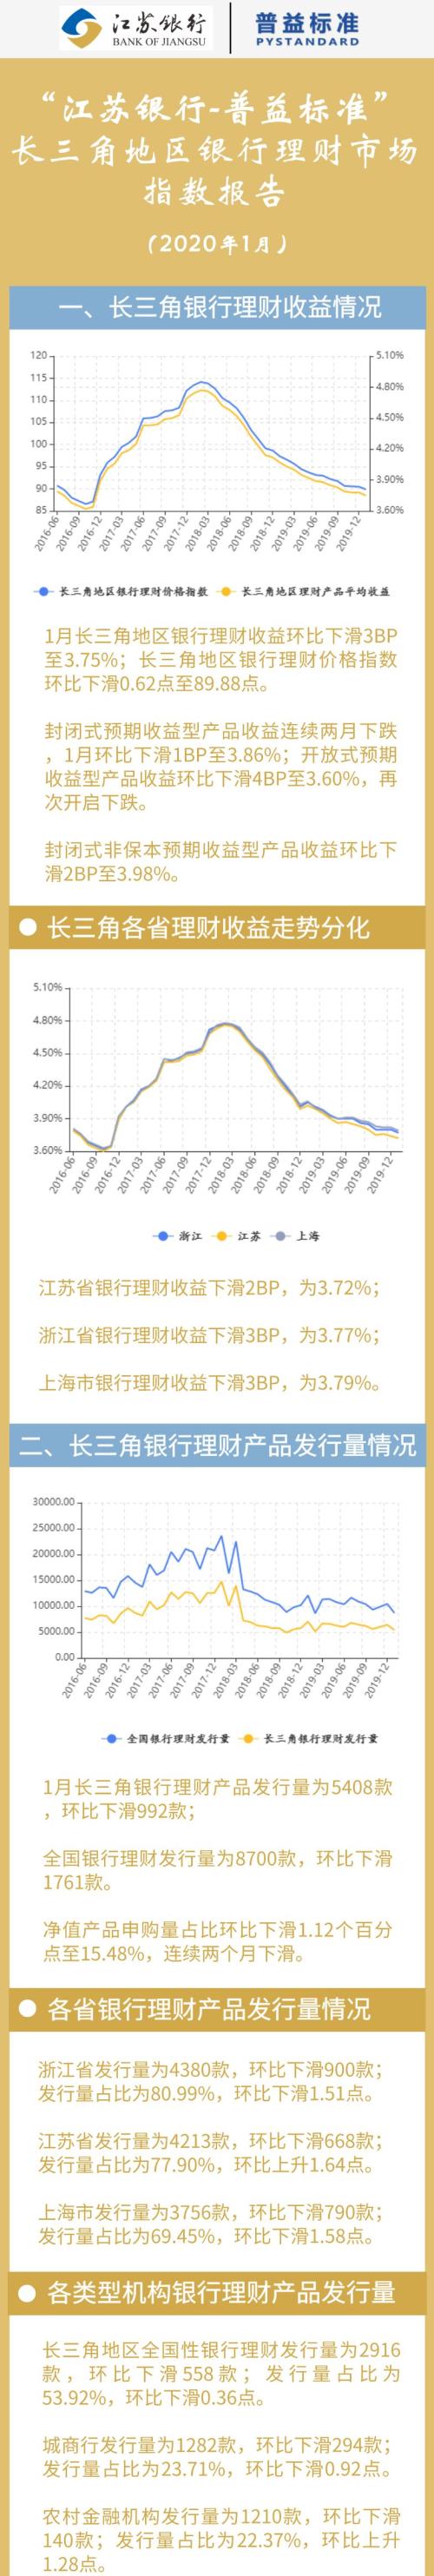 1月长三角地区银行理财收益跌至3.75%，春节假期影响下产品发行量下降